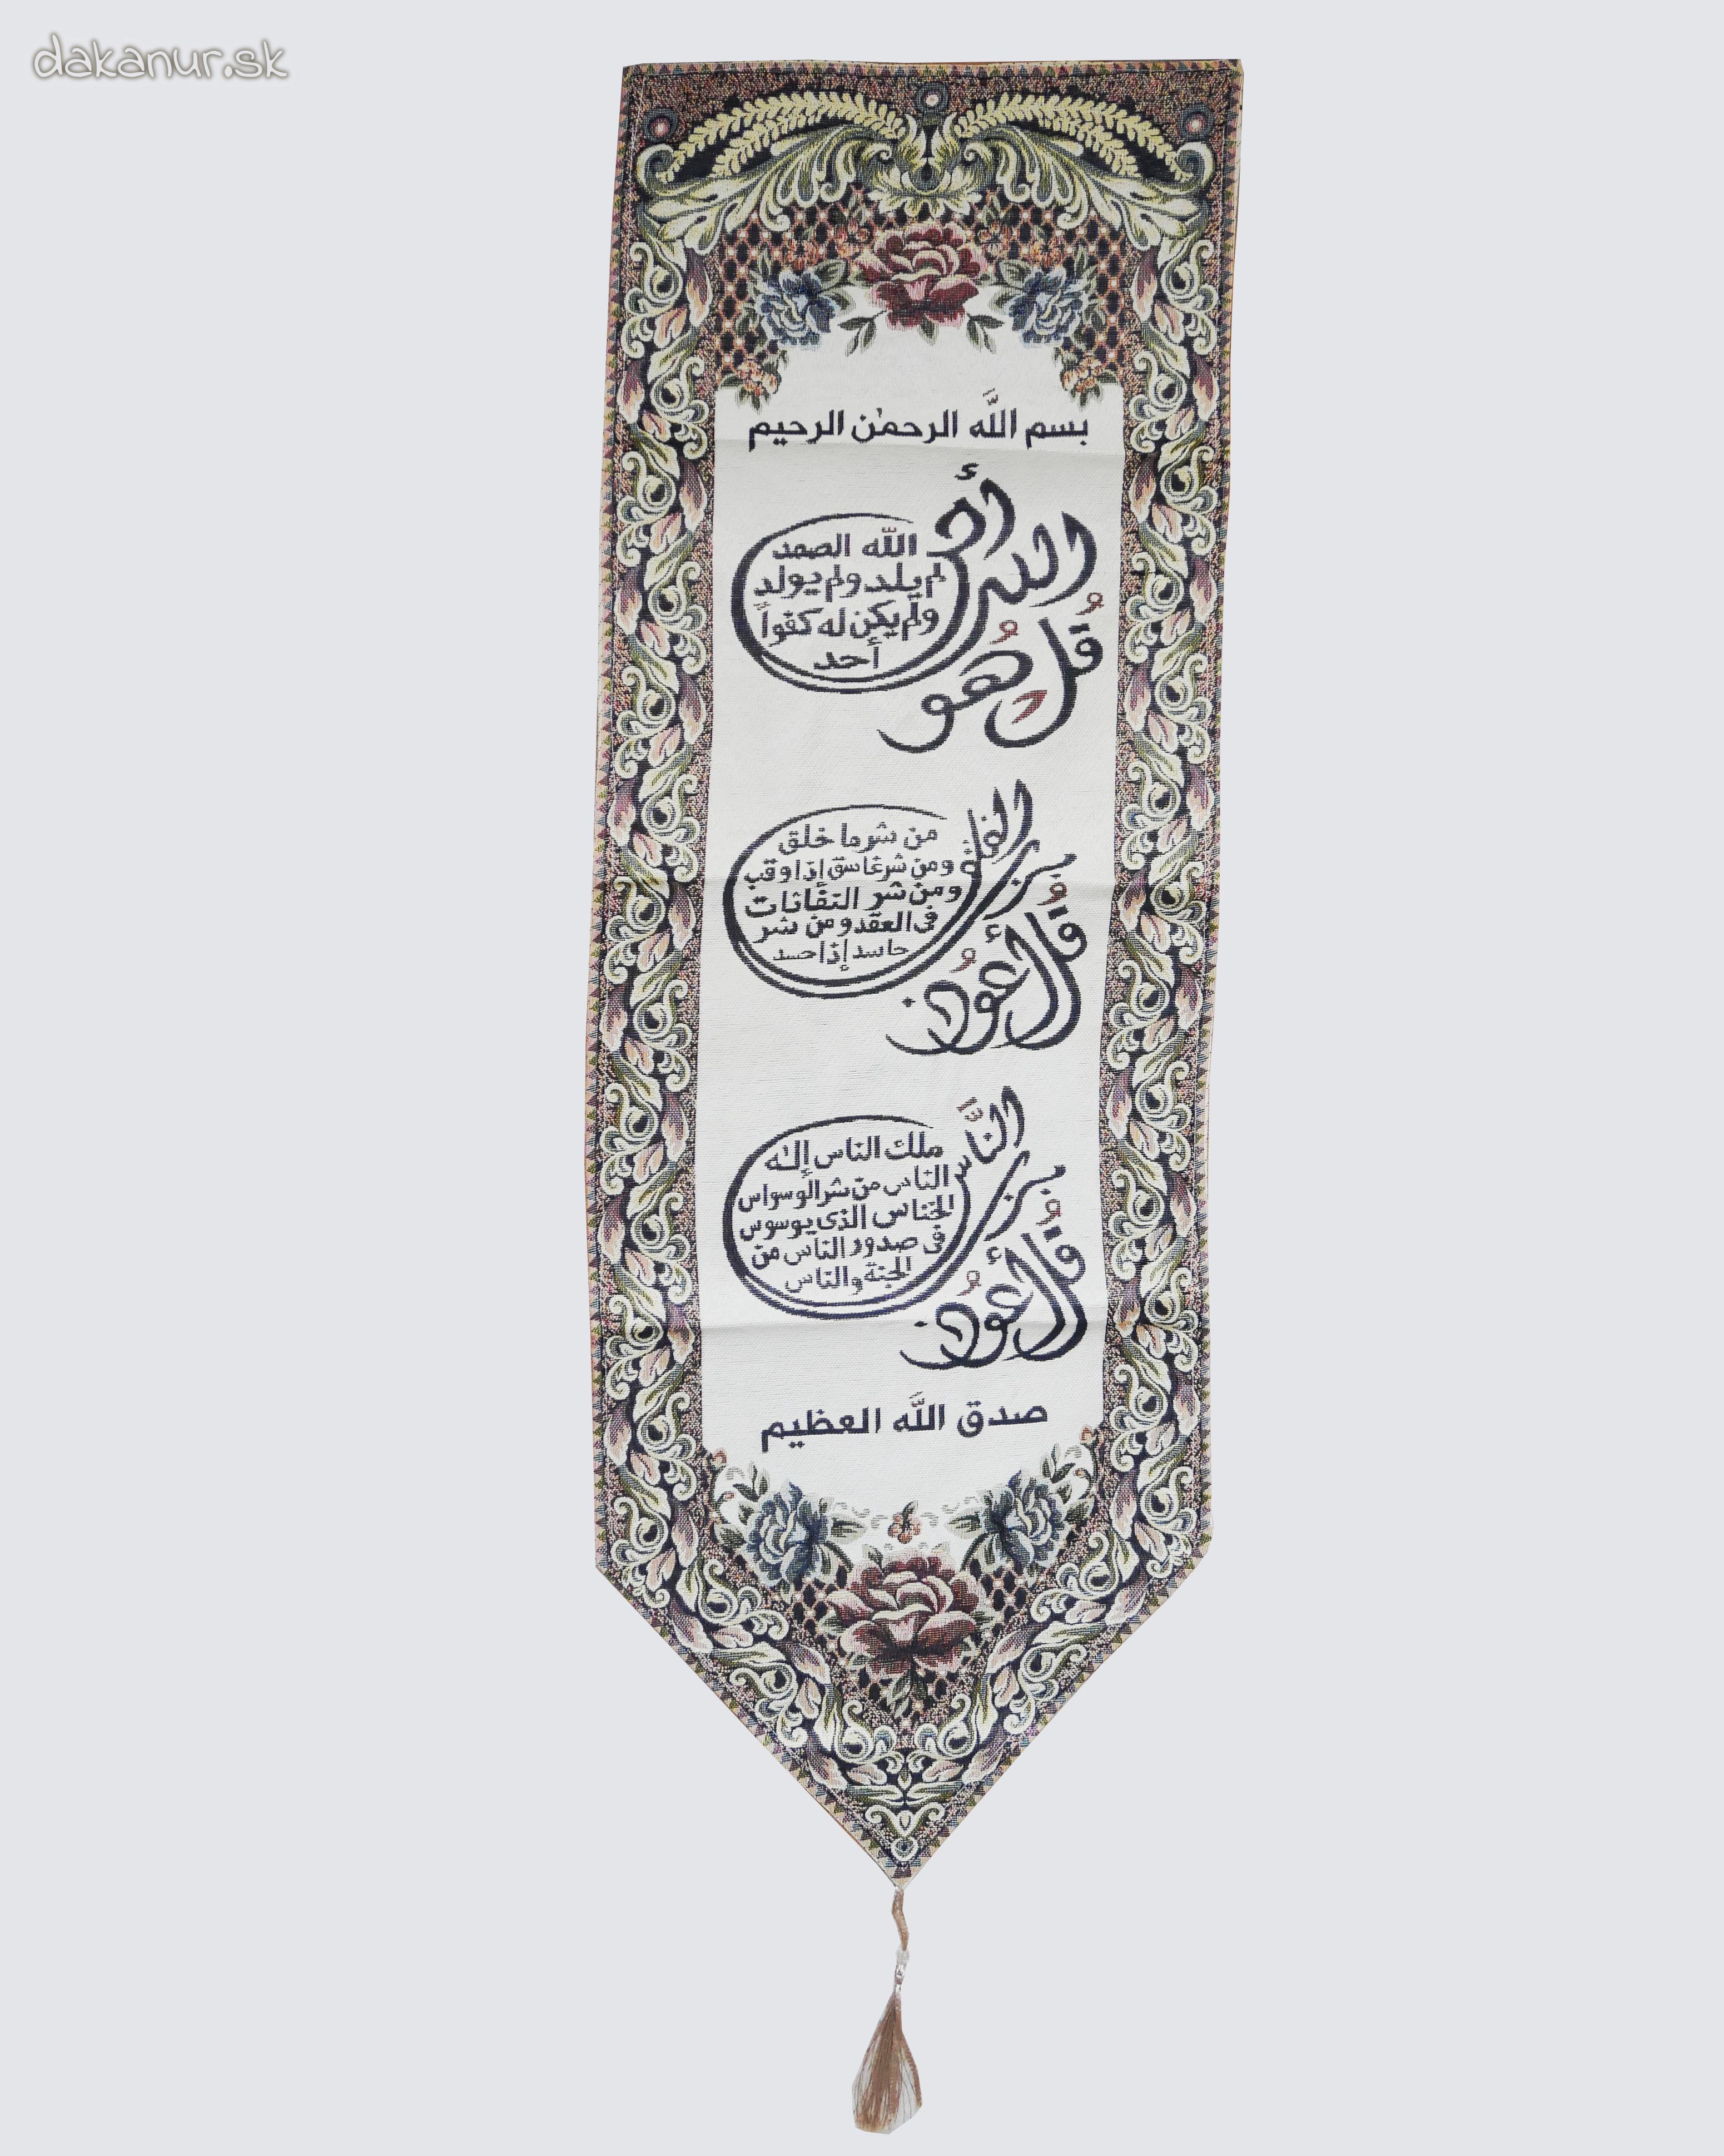 Gobelín, islamská kaligrafia - 3 súry Koránu